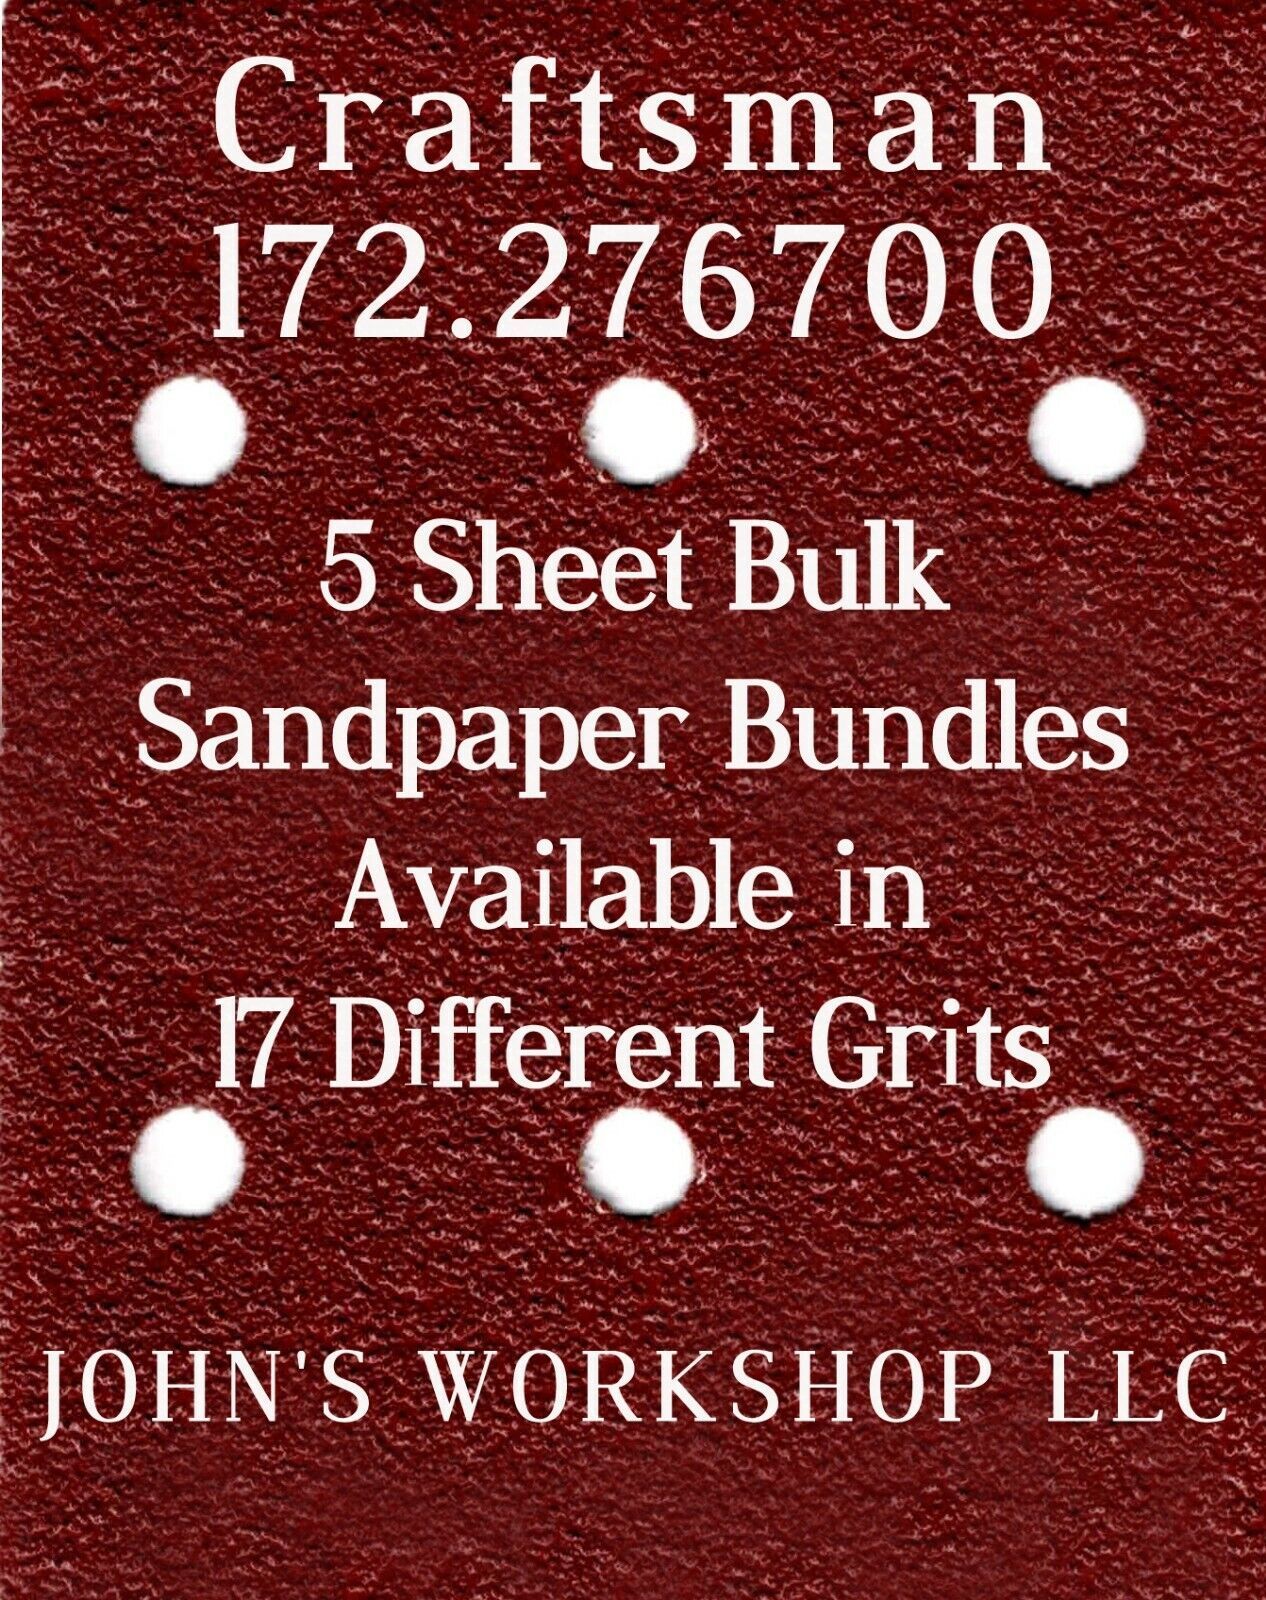 Primary image for Craftsman 172.276700 - 1/4 Sheet - 17 Grits - No-Slip - 5 Sandpaper Bulk Bundles